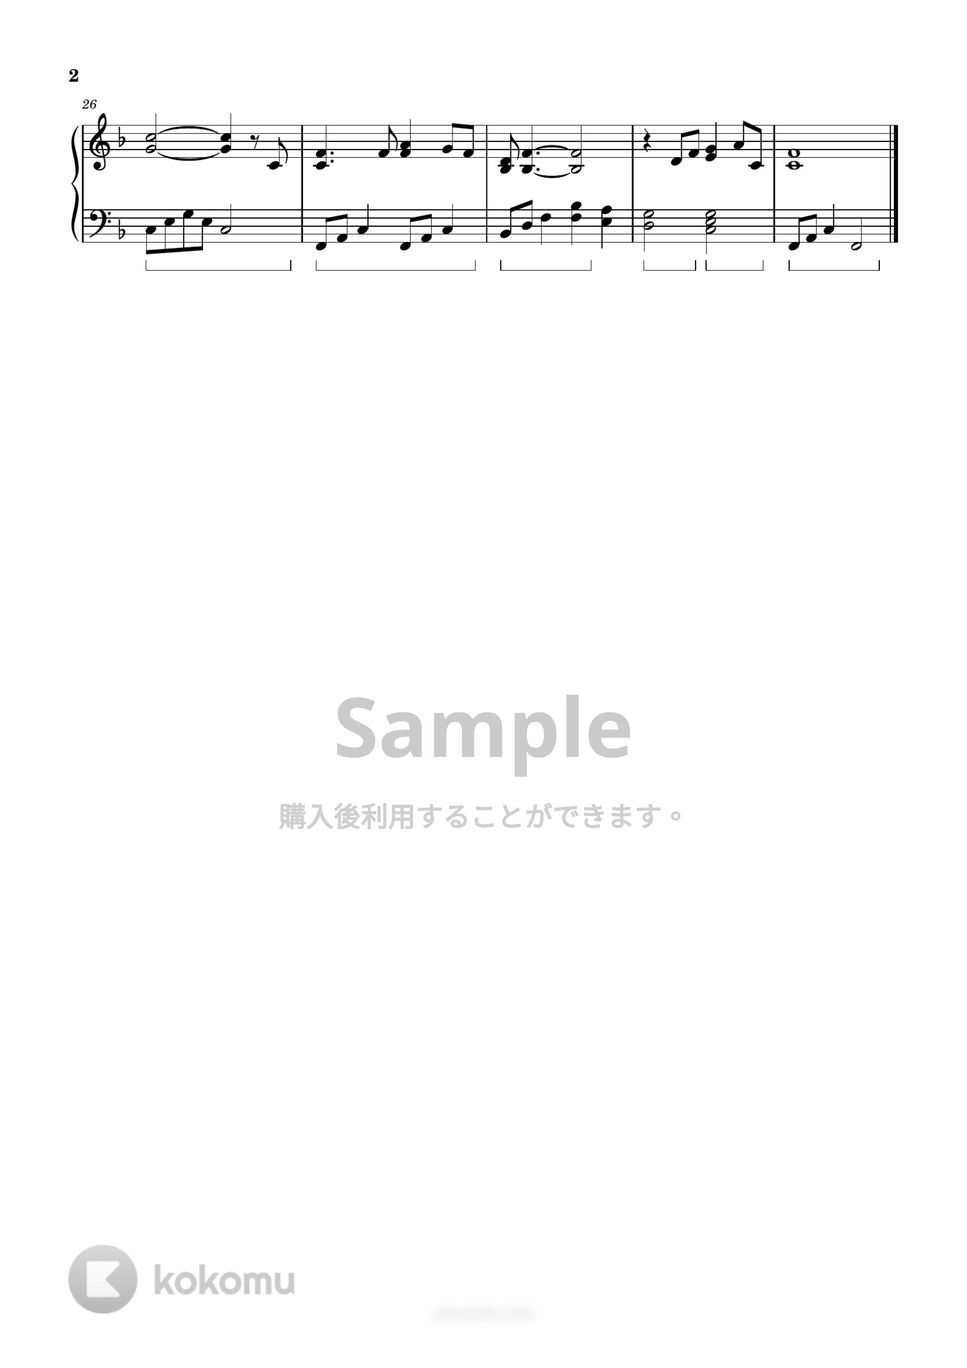 海援隊 - 贈る言葉 (簡単楽譜) by ピアノ塾